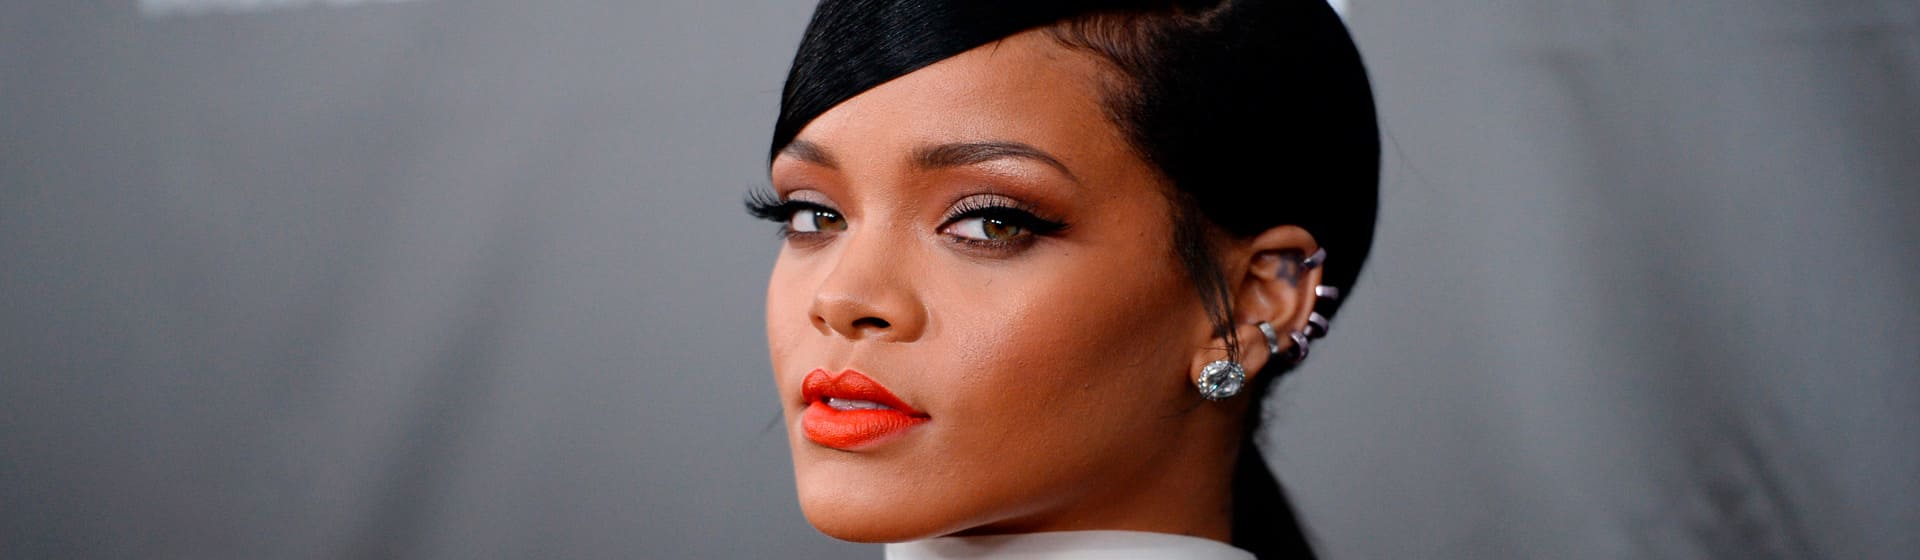 Rihanna - Мерч и одежда с атрибутикой